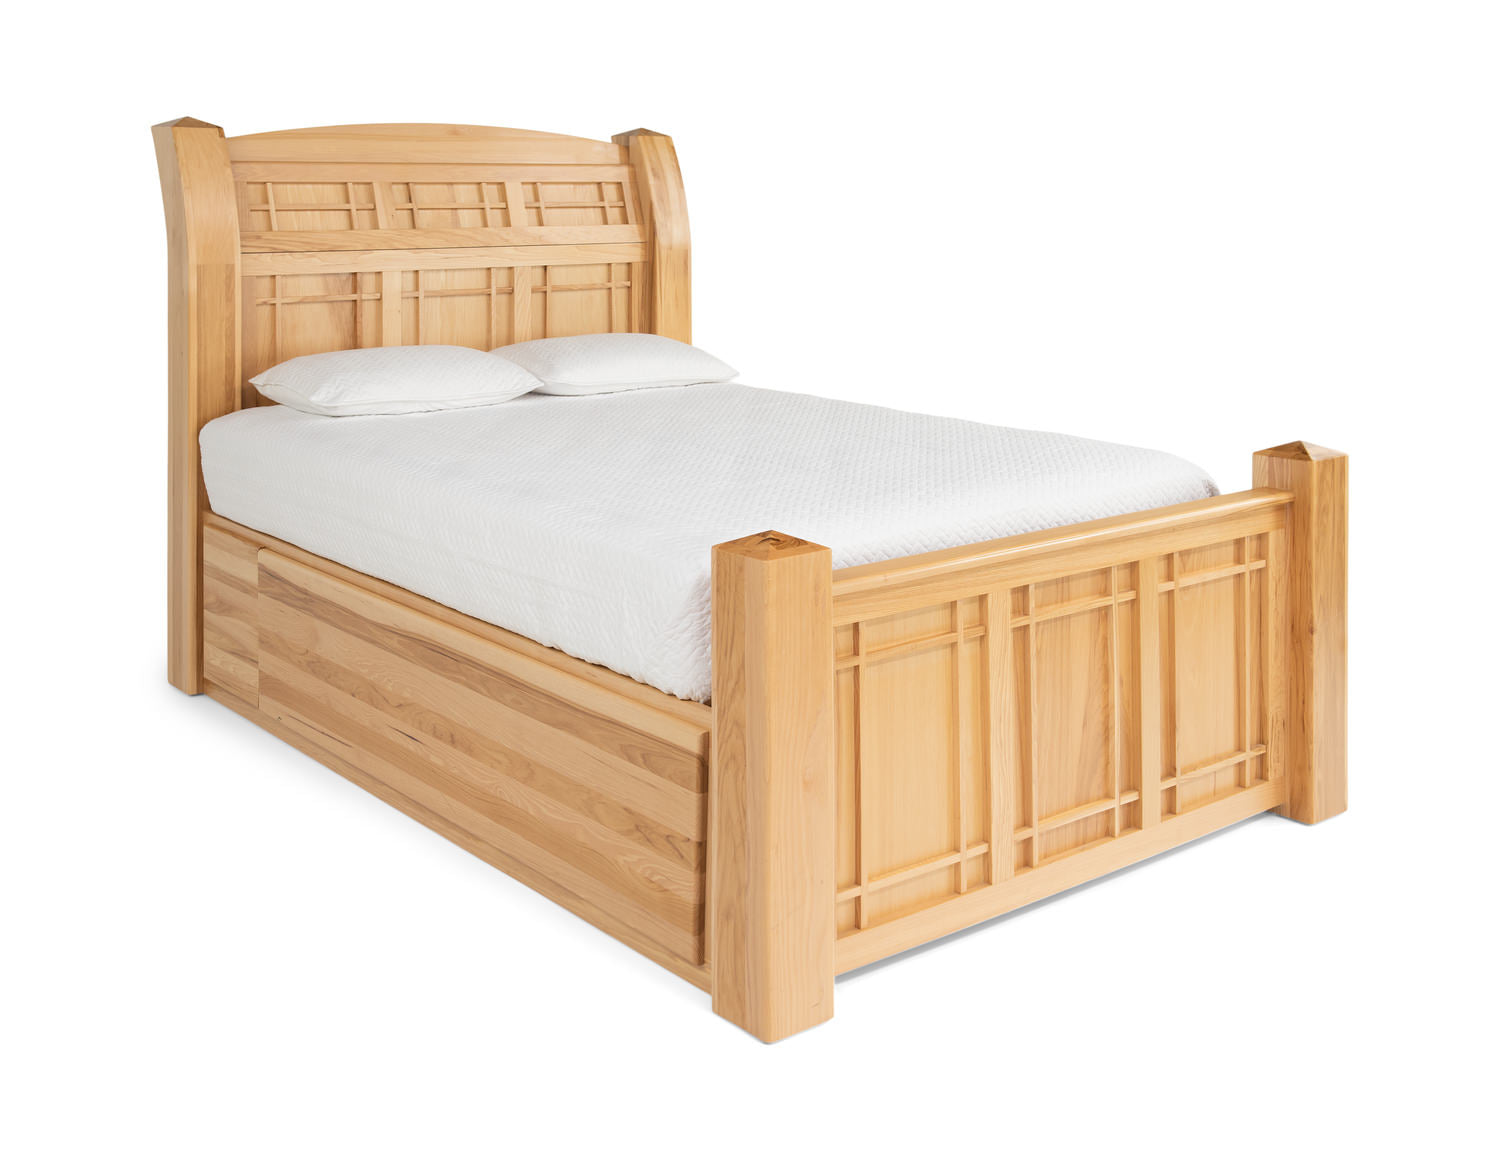 Solid Wood Bed frames